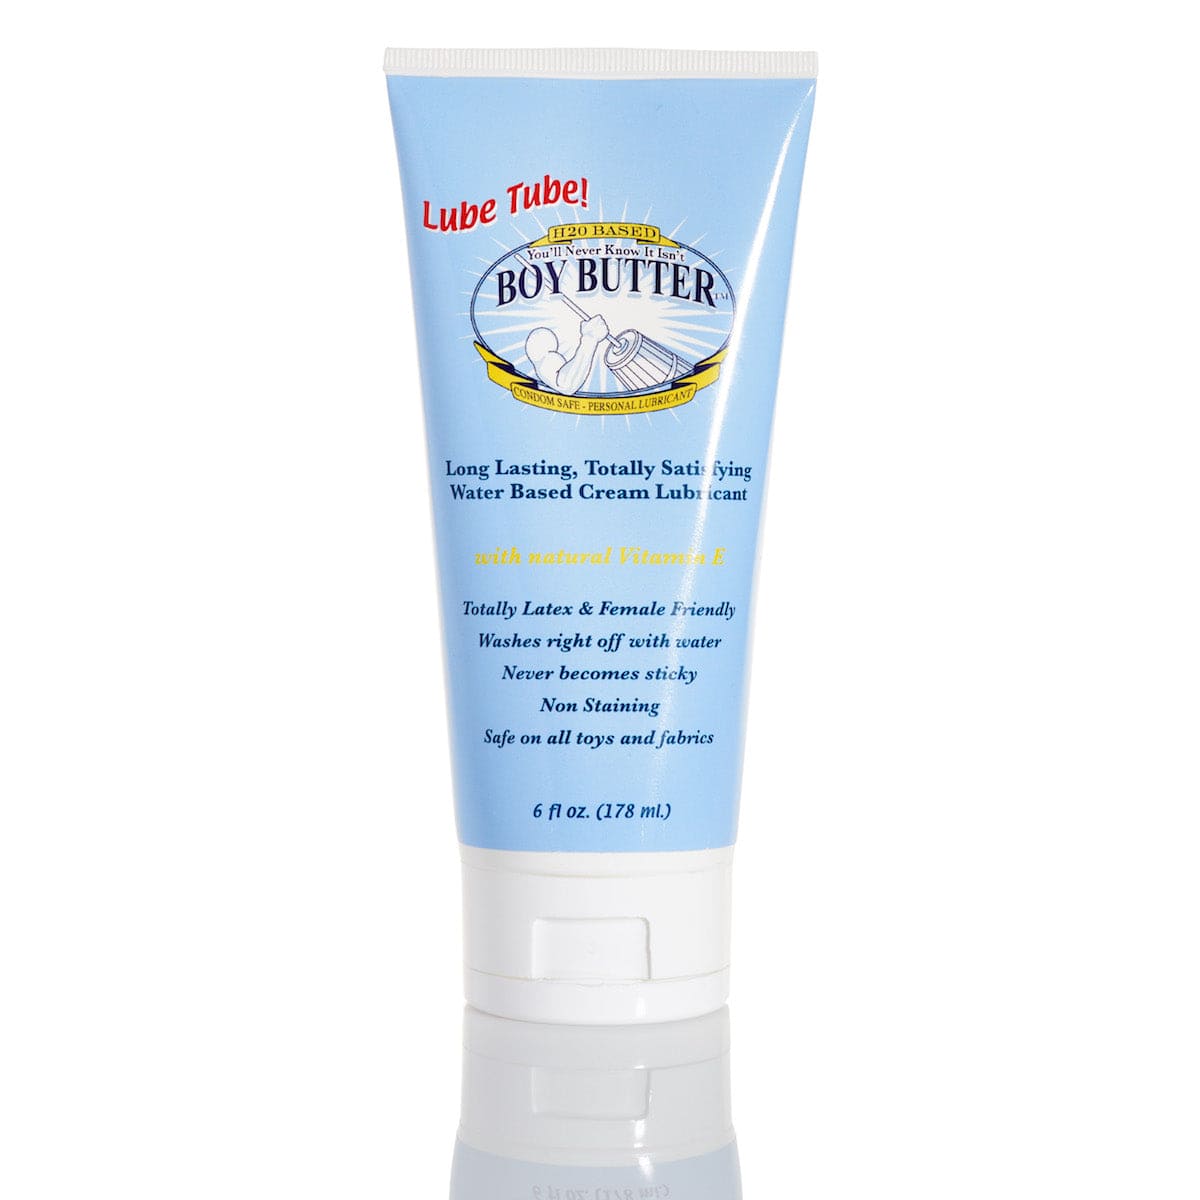 Boy Butter H2O Personal Lubricant Cream - 16 oz tub